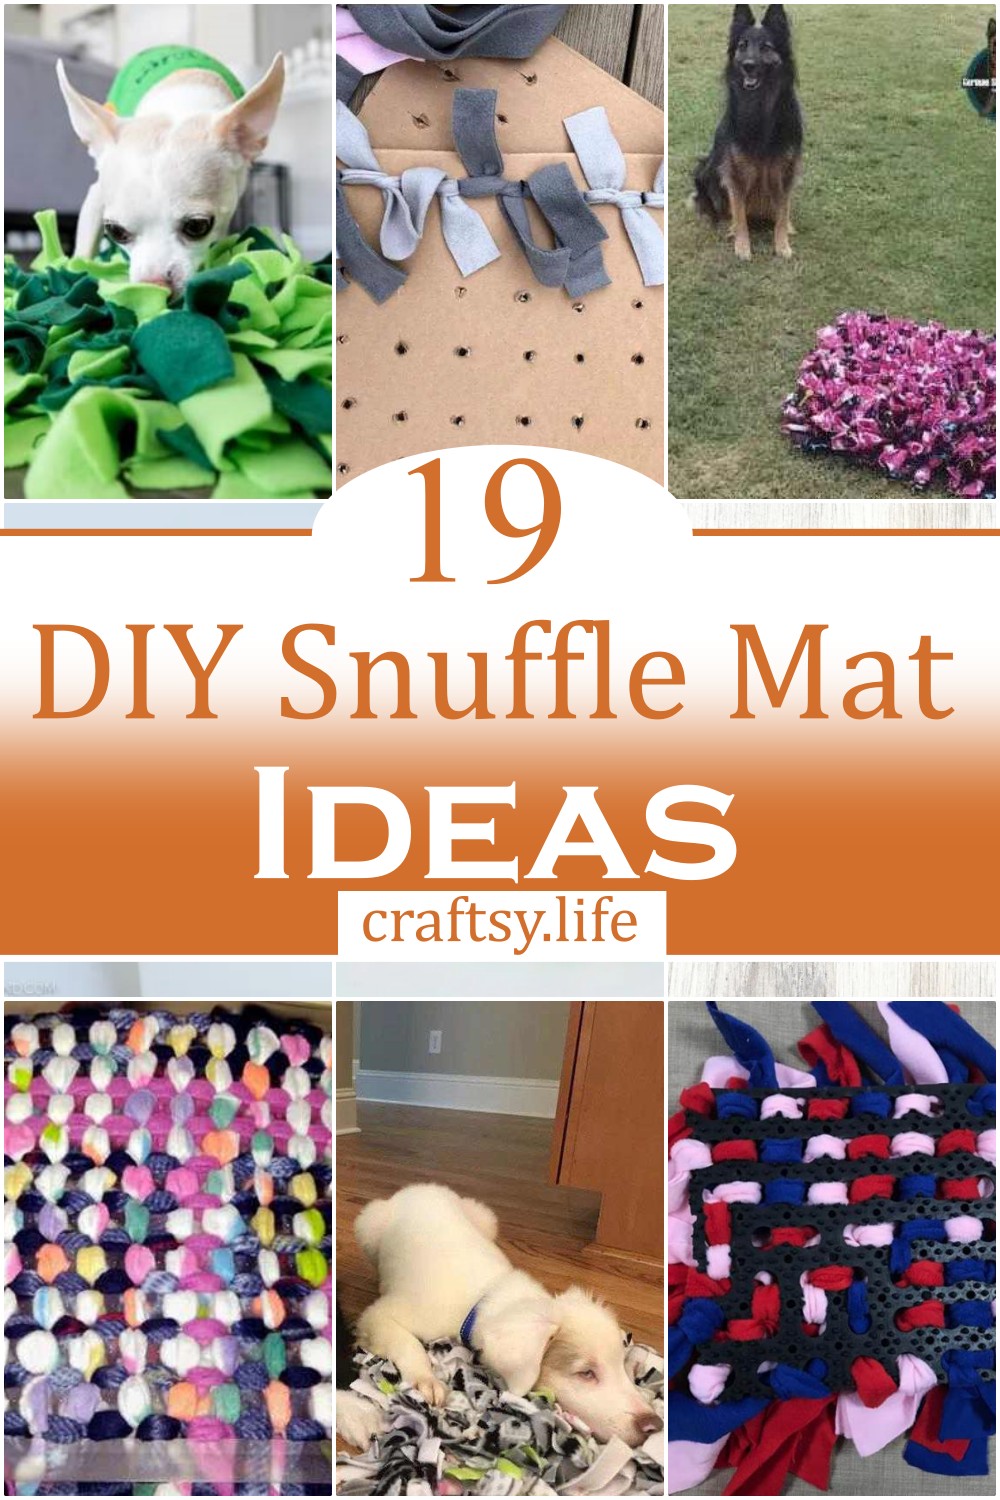 DIY Snuffle Mat Ideas